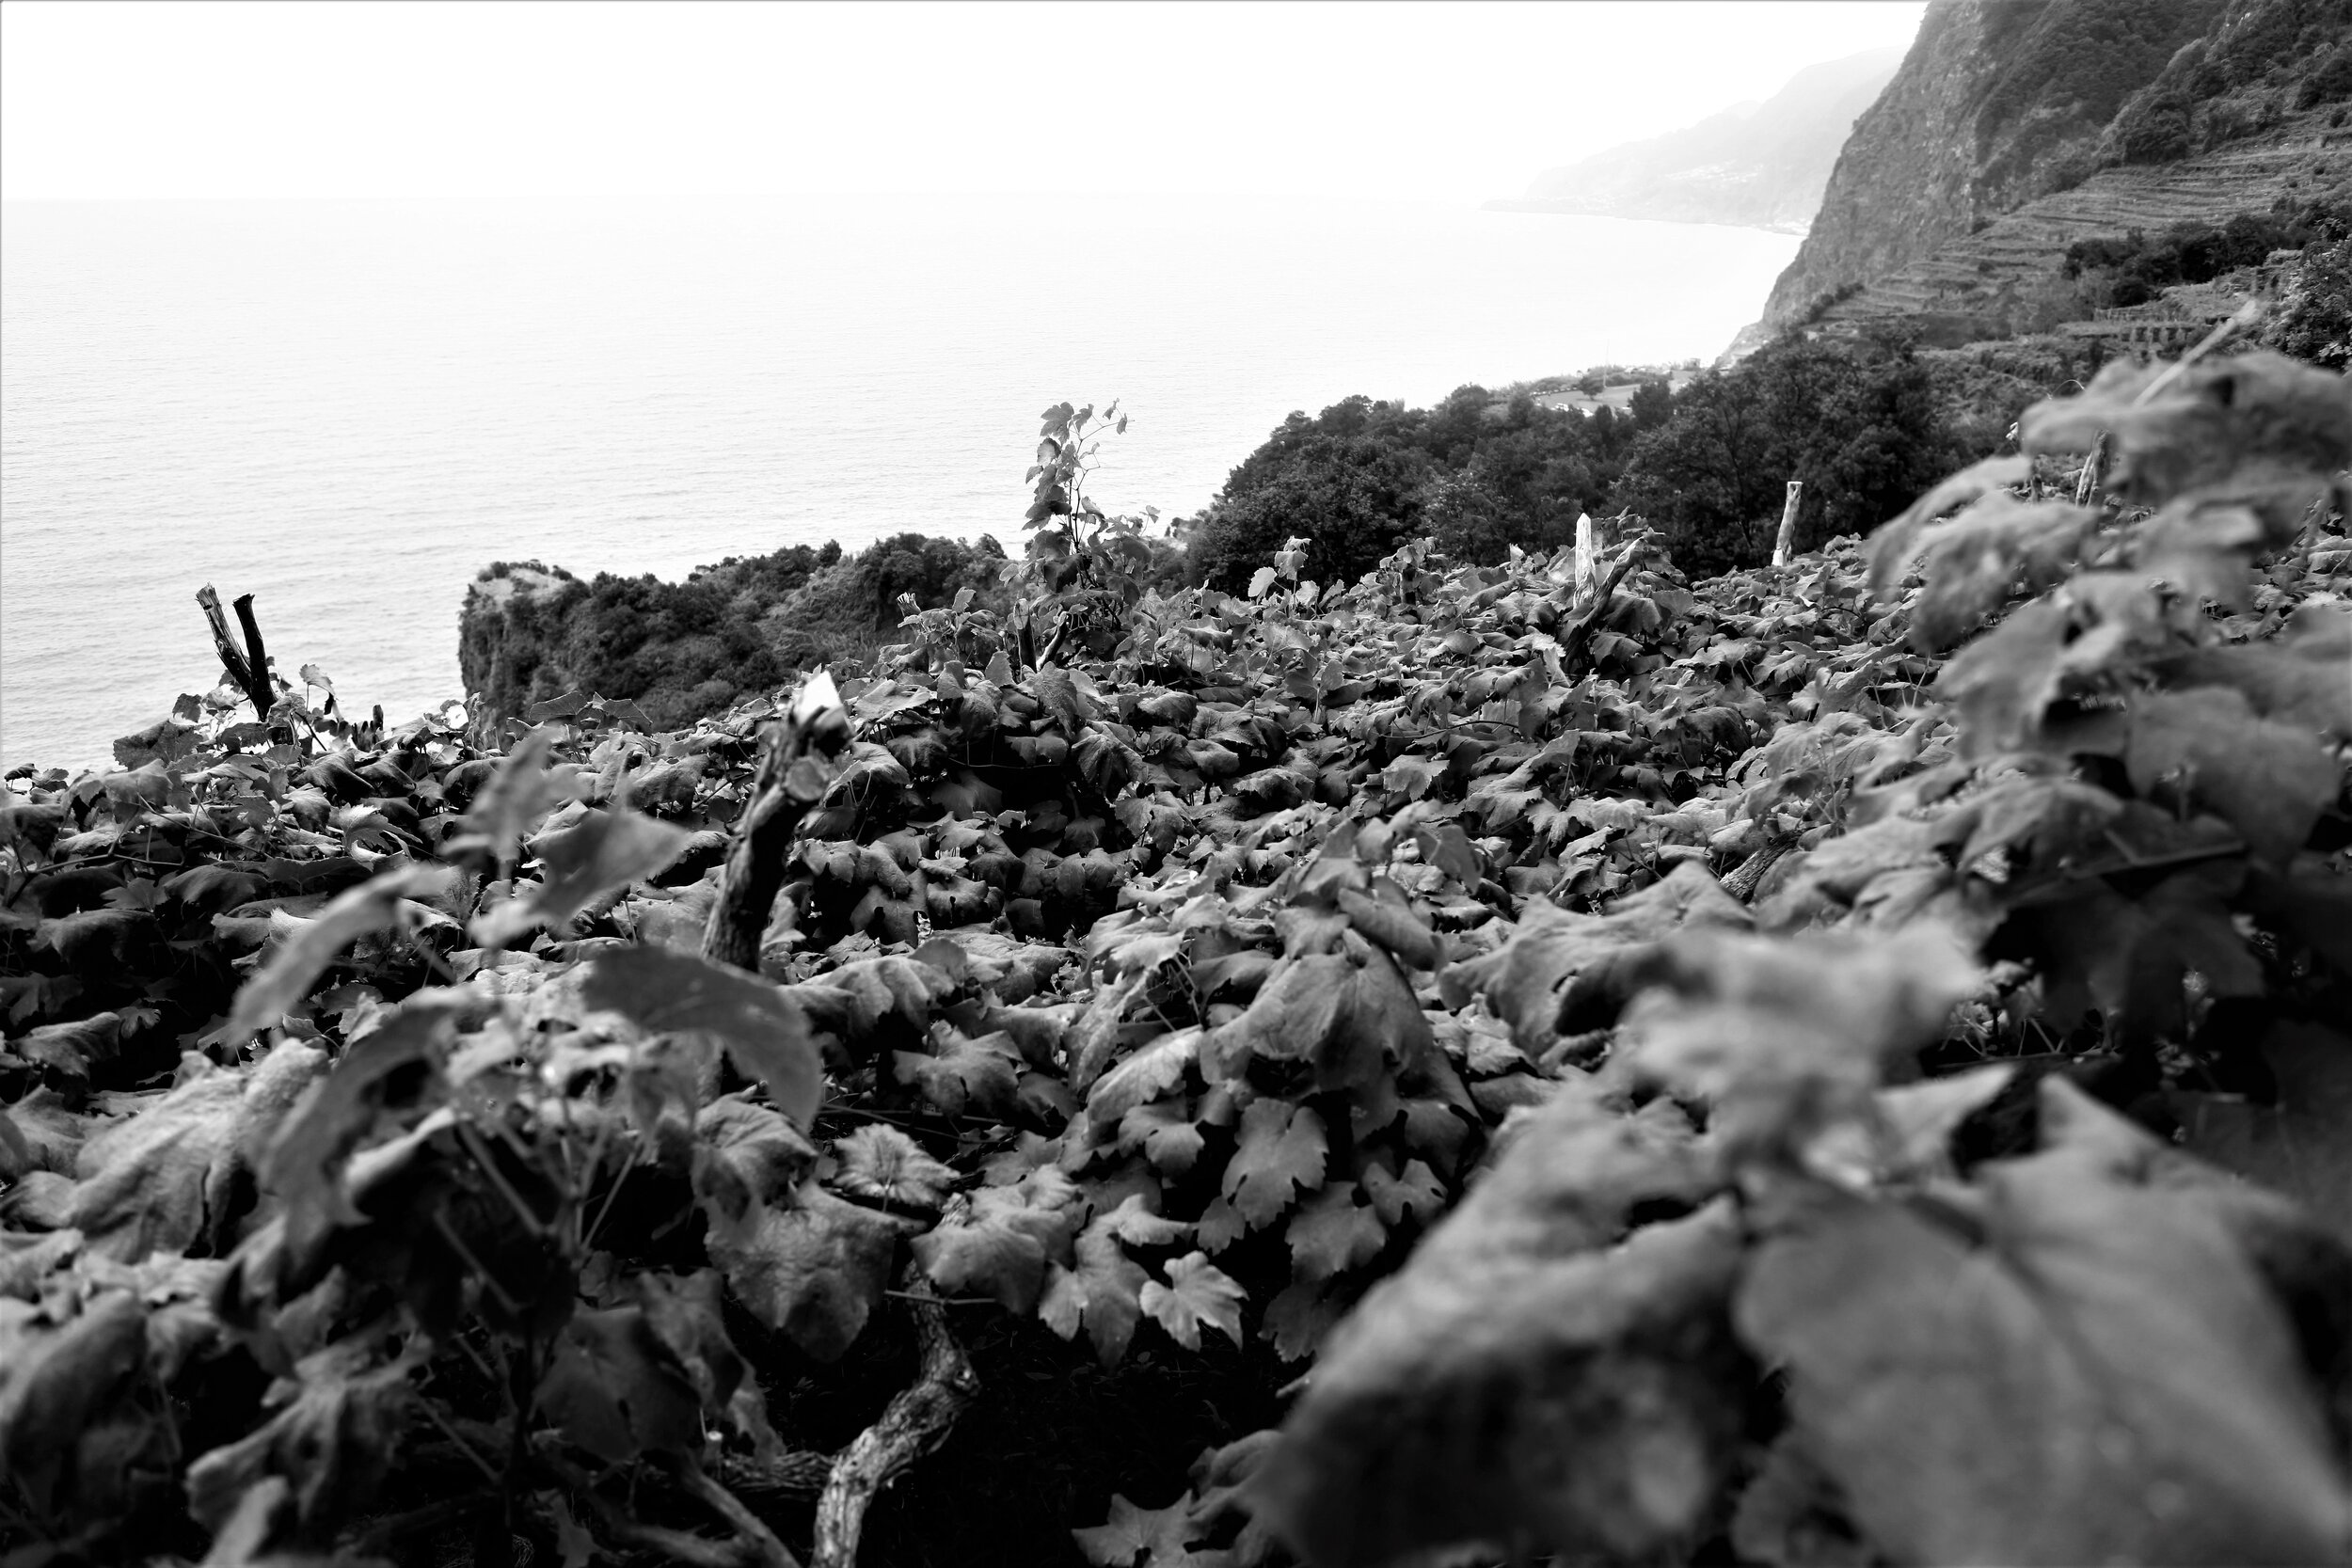  Die Trauben für den Madeira-Wein wachsen allesamt auf der Insel, oft am Nordufer der Insel in spektakulären Lagen direkt am Meer. 